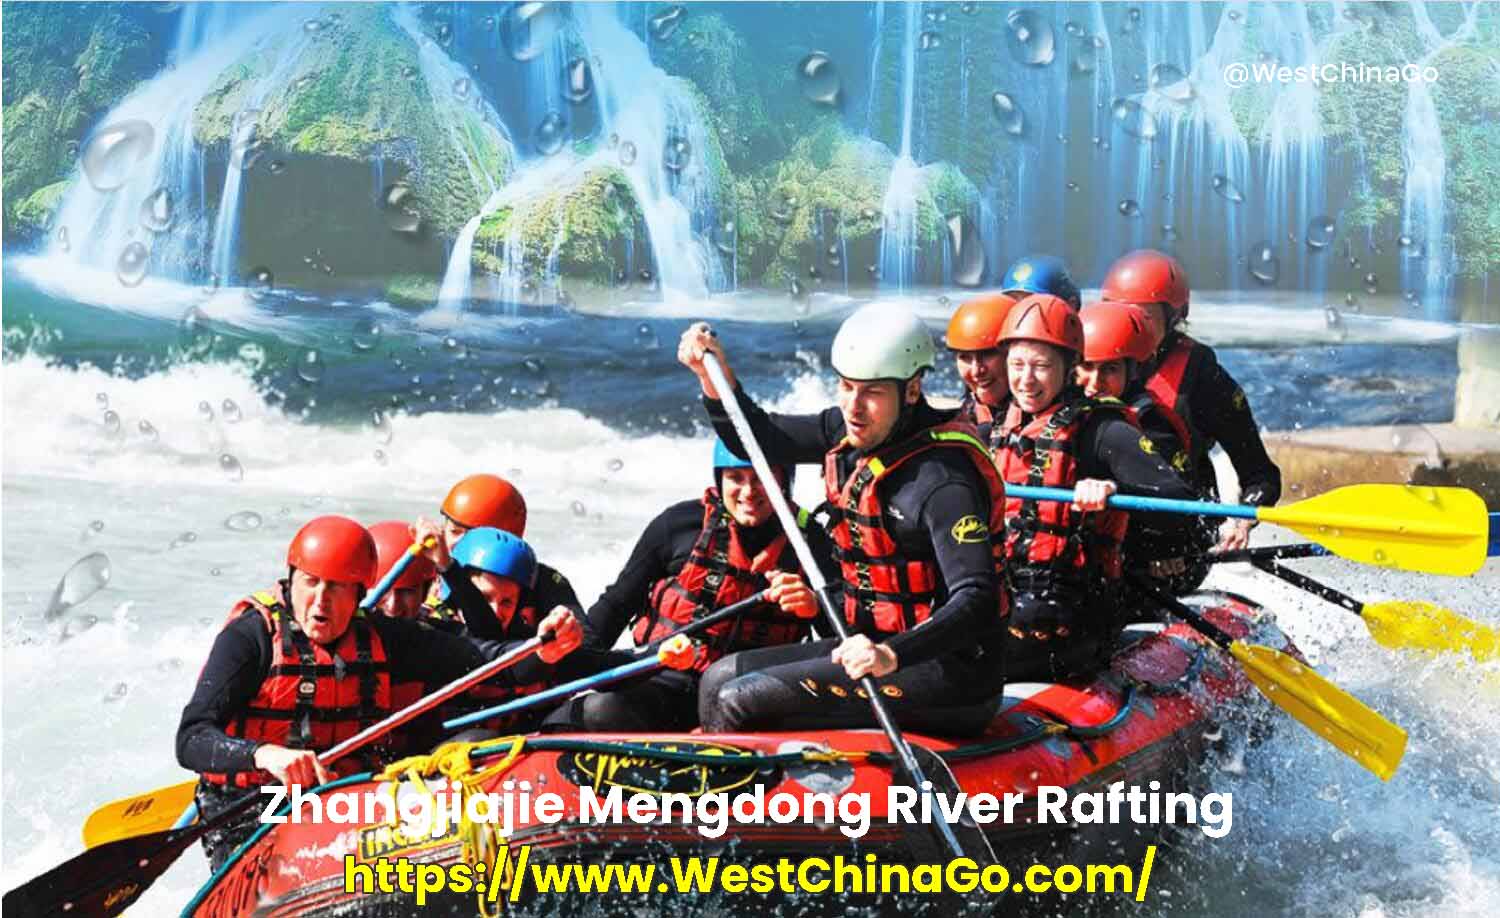 Zhangjiajie Mengdong River Rafting